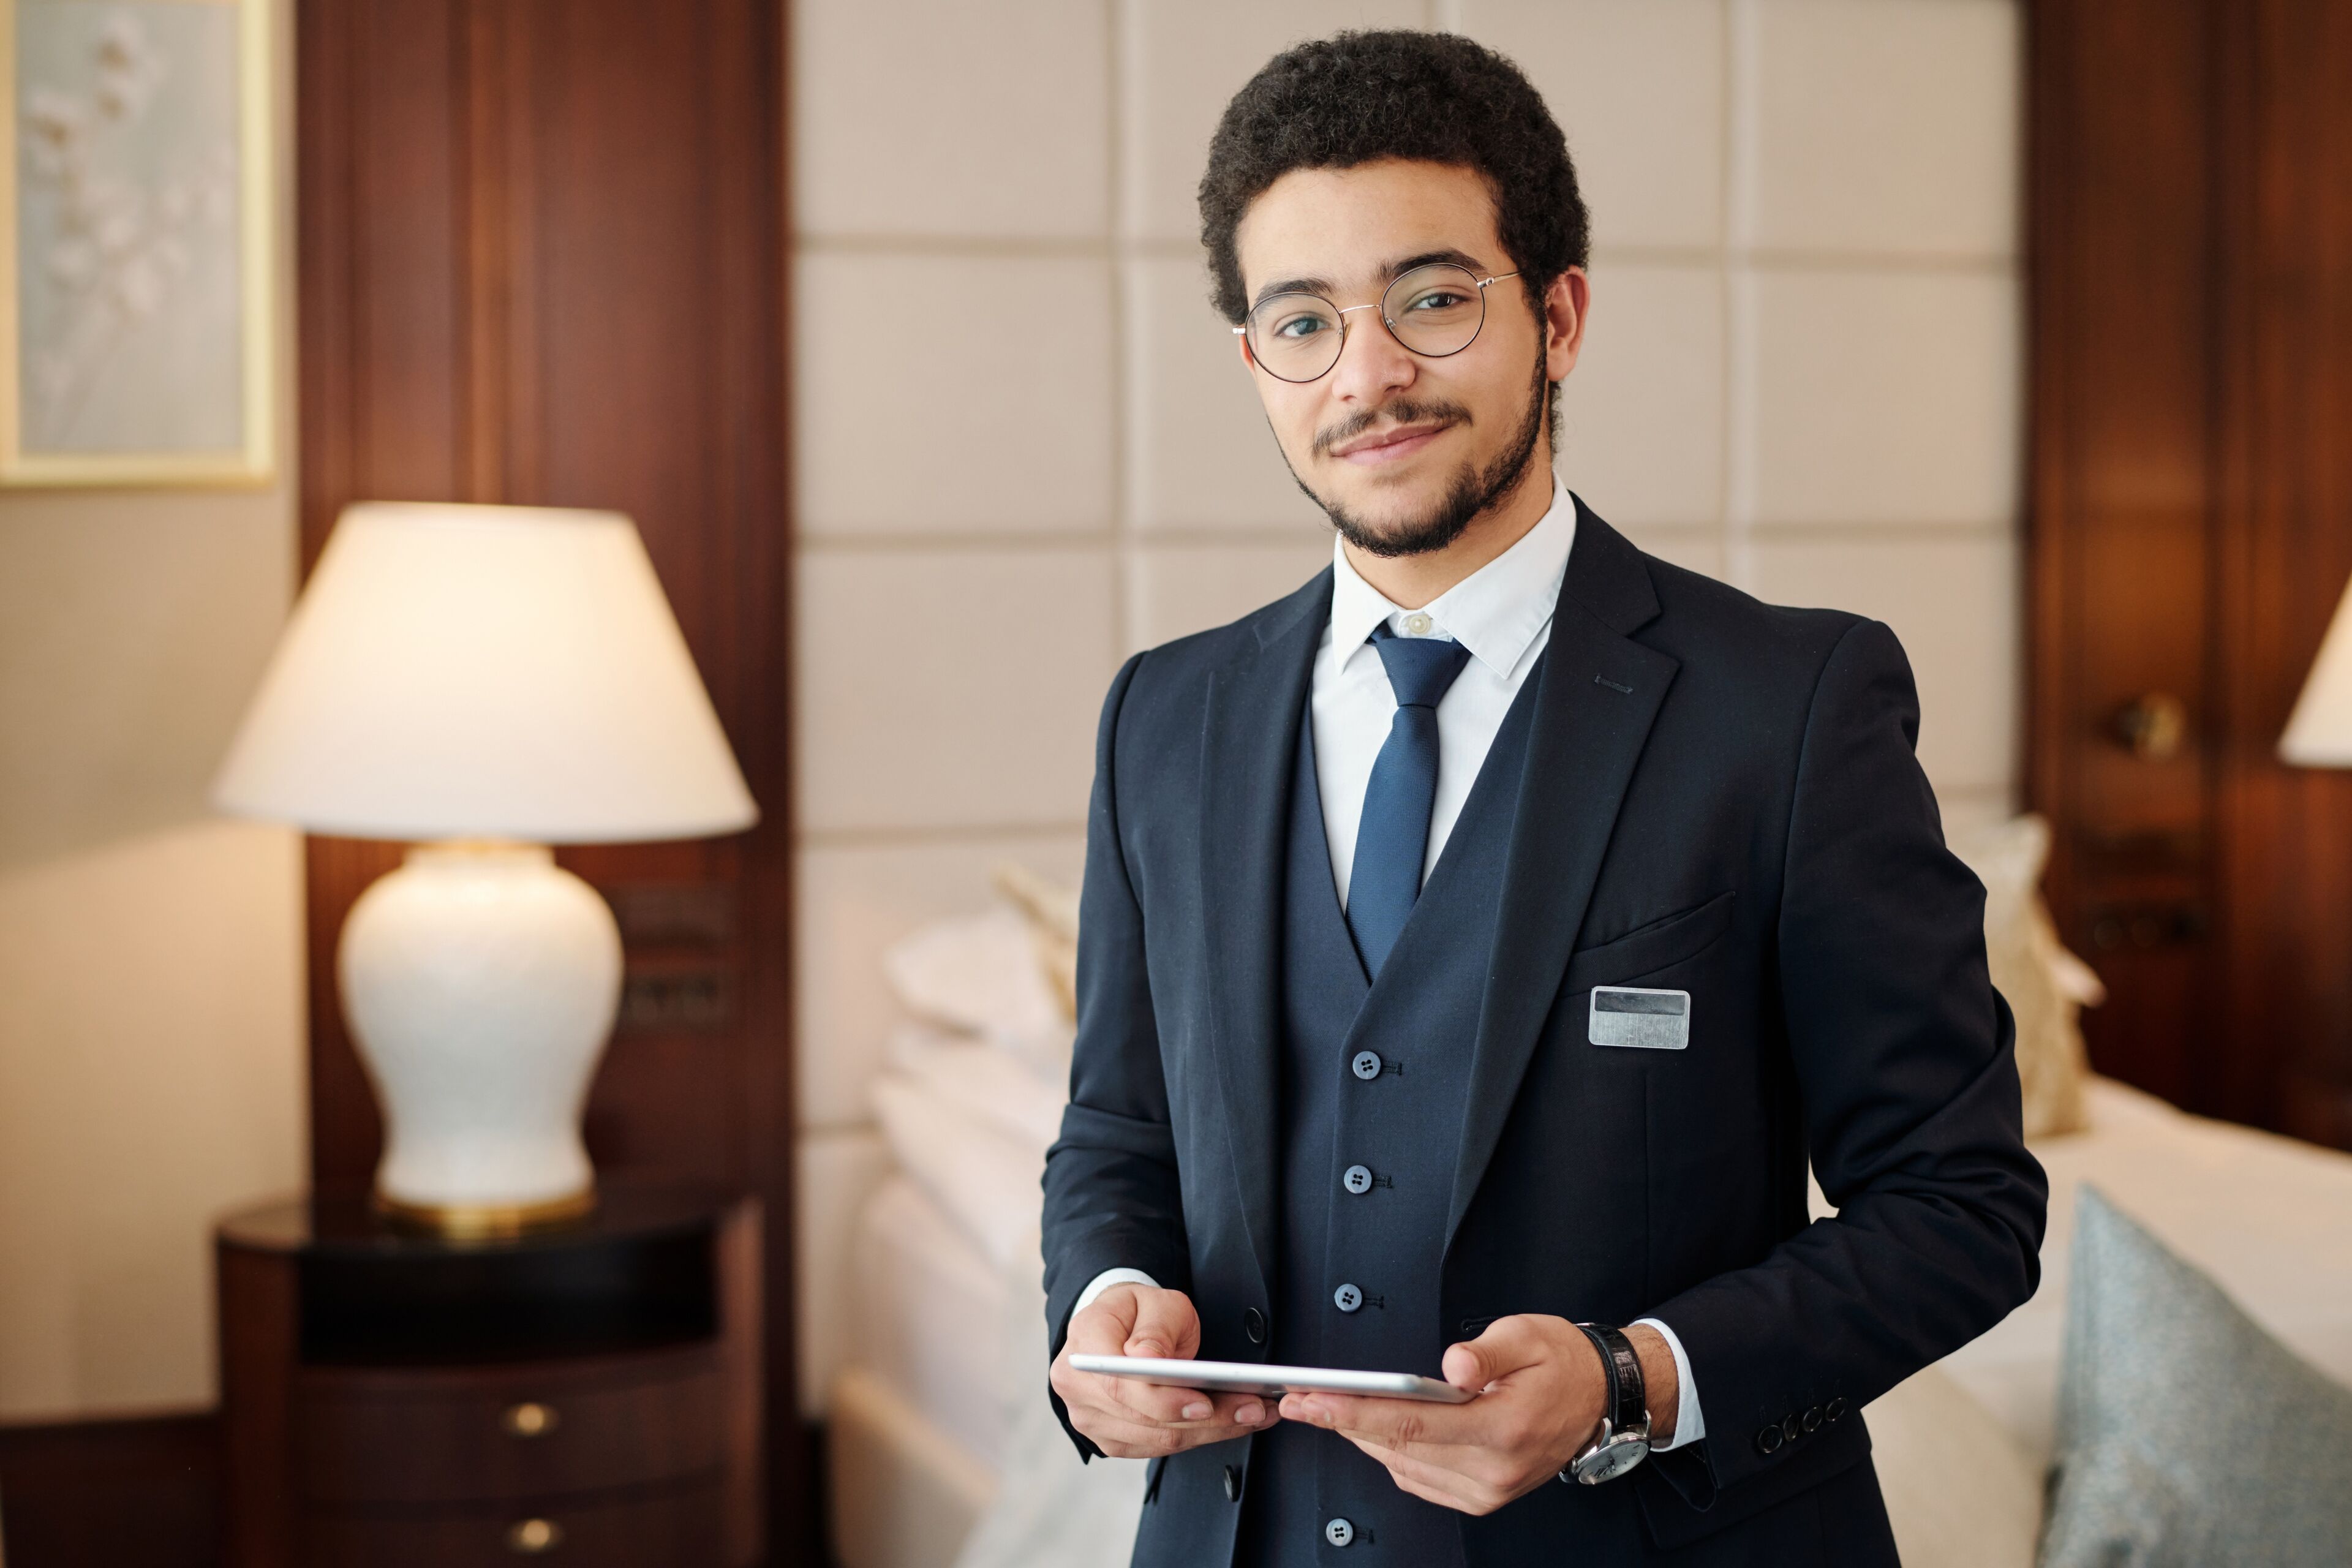 ImageUn conserje profesional en traje a medida se encuentra con una sonrisa de bienvenida, sosteniendo una tableta digital en una habitación de hotel lujosa.